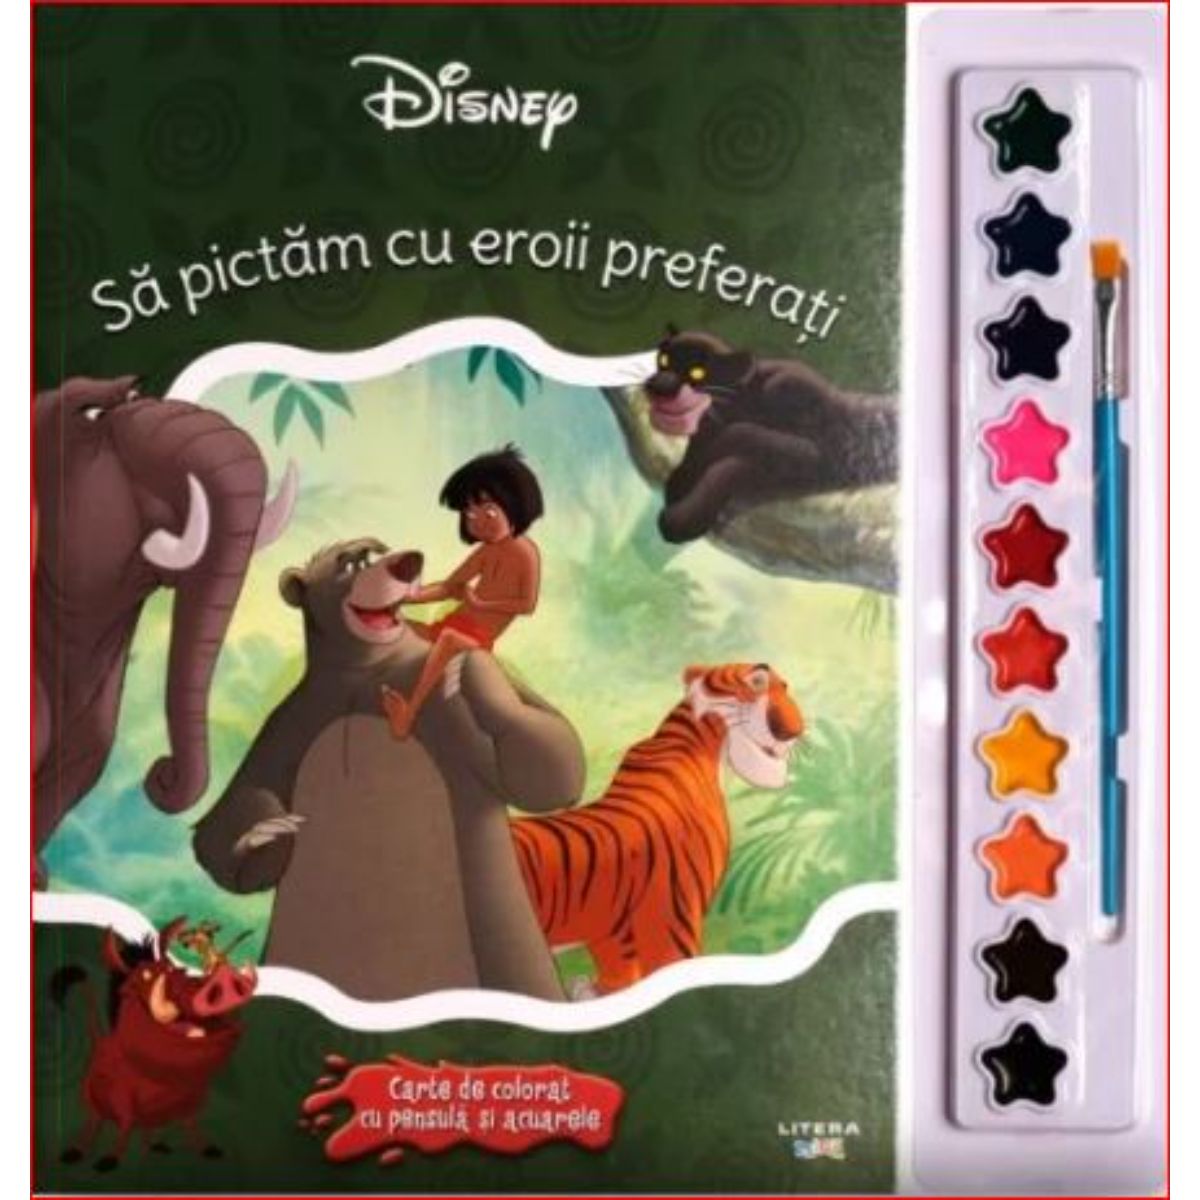 Sa pictam cu eroii preferati carte de colorat cu pensule si acuarele, Disney acuarele